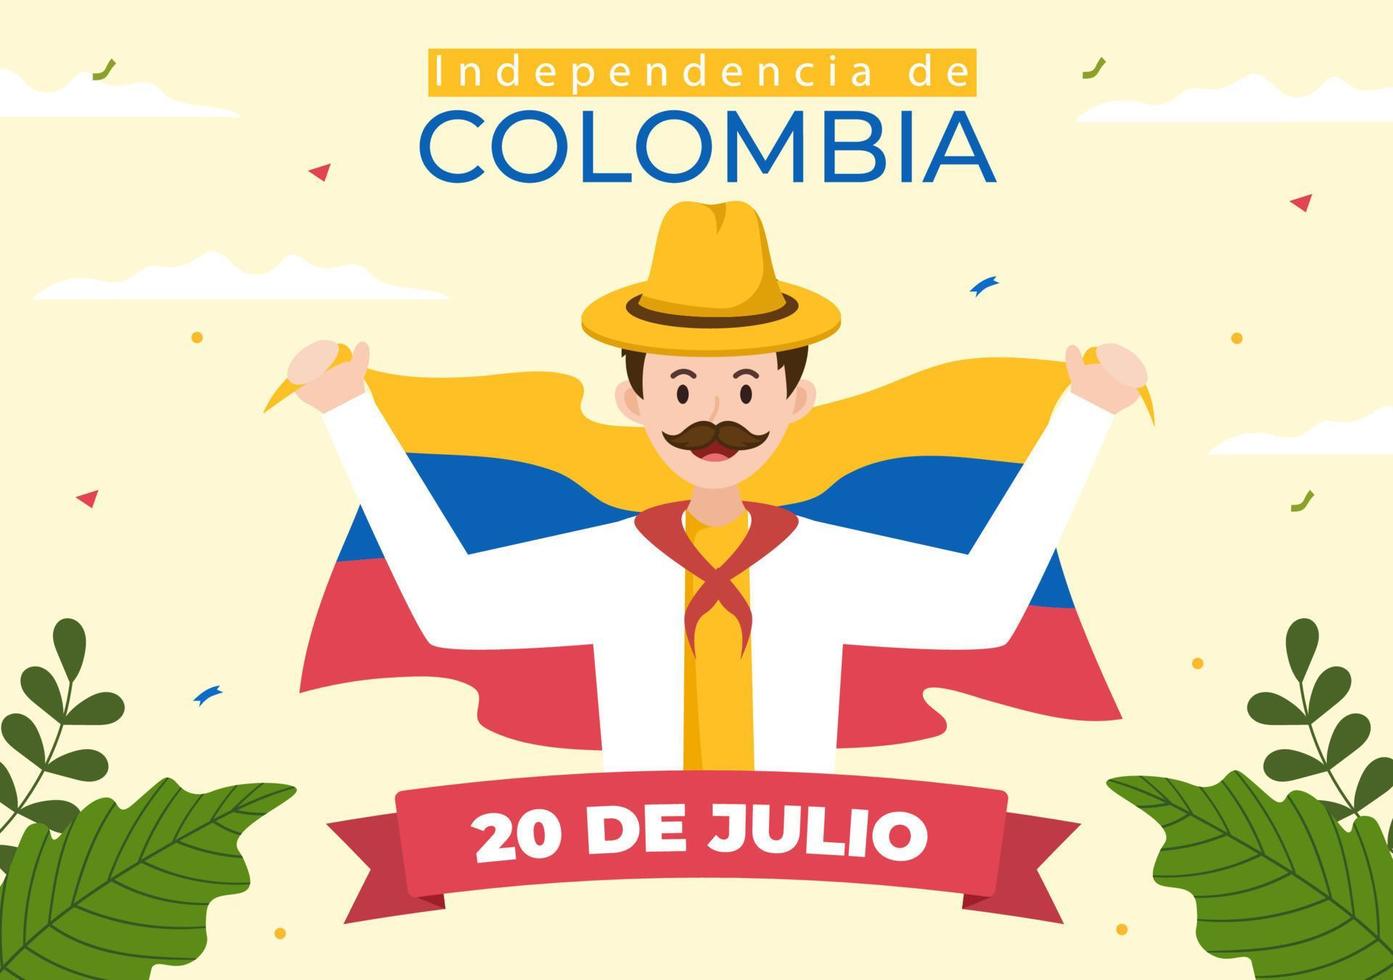 20 juli independencia de colombia cartoon afbeelding met vlaggen, ballonnen en personages voor posterontwerp vector